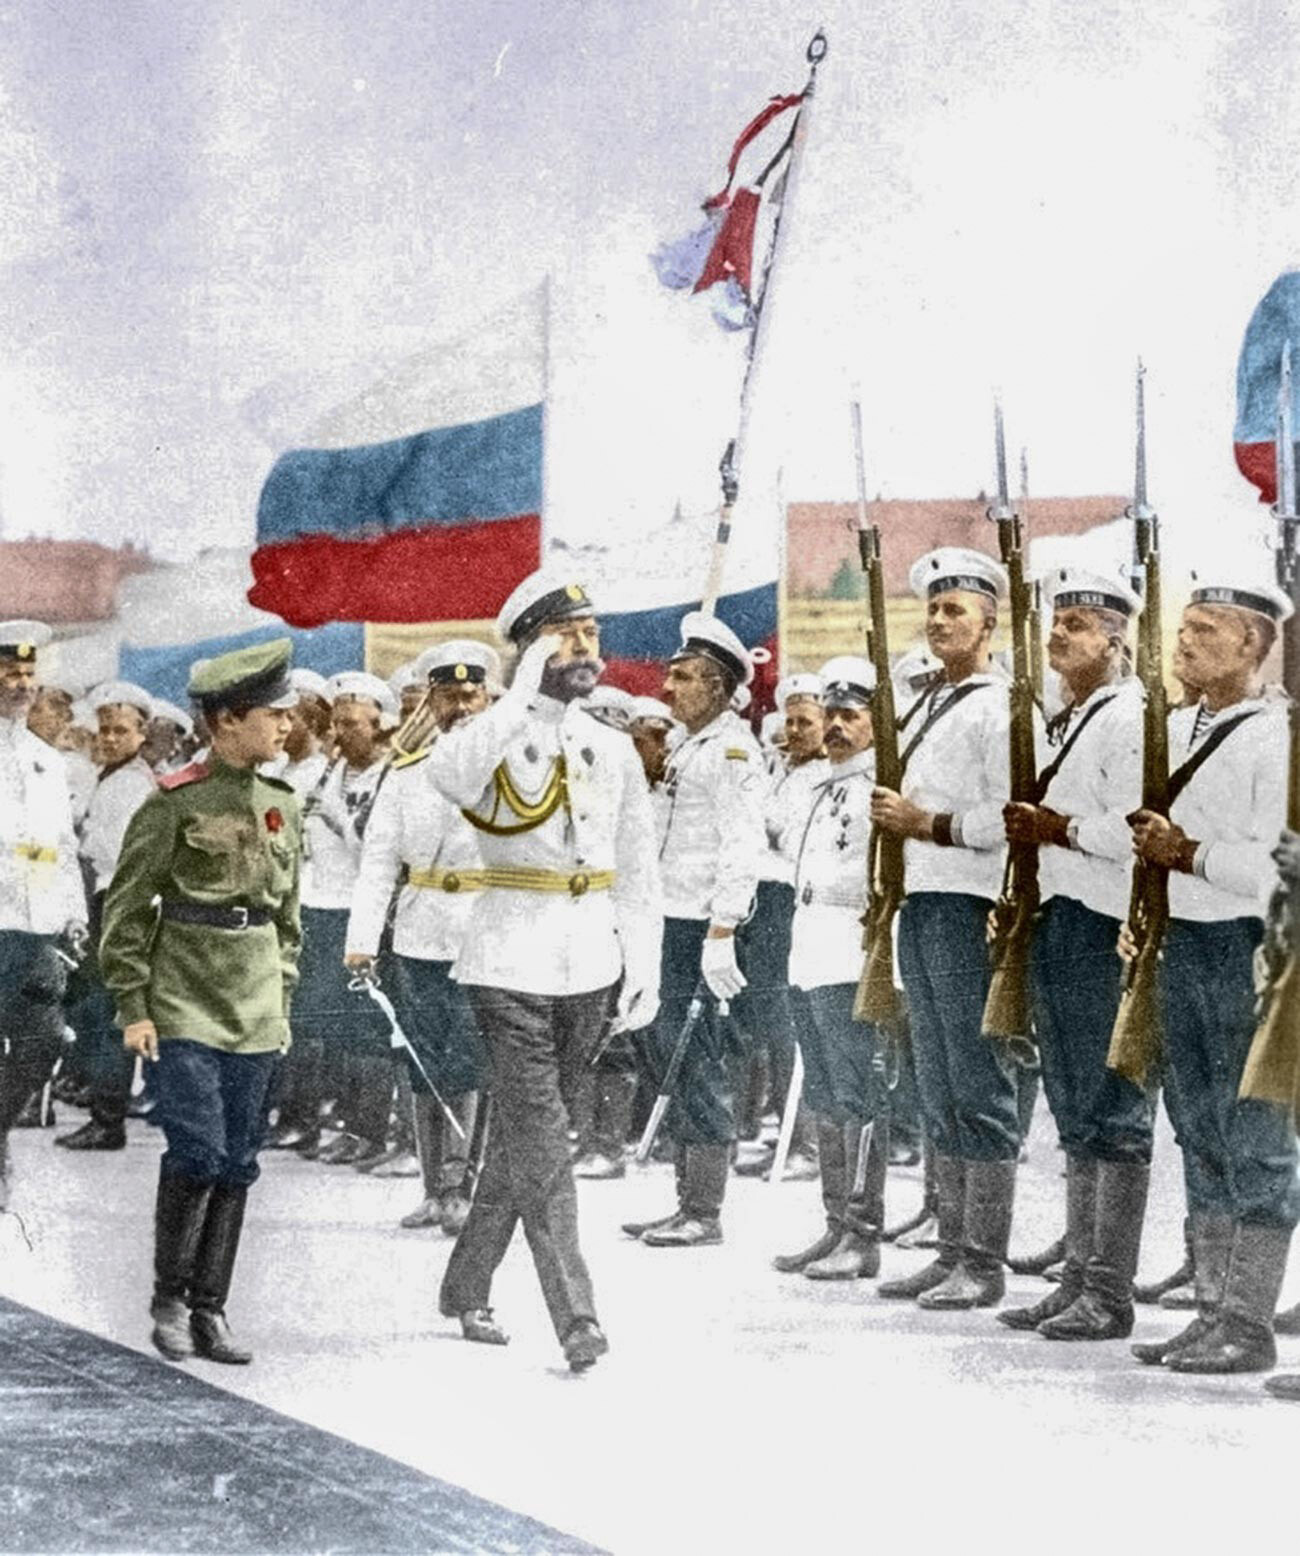 Nikolay II menetapkan bendera putih-biru-merah sebagai bendera nasional Rusia pada tahun 1896.